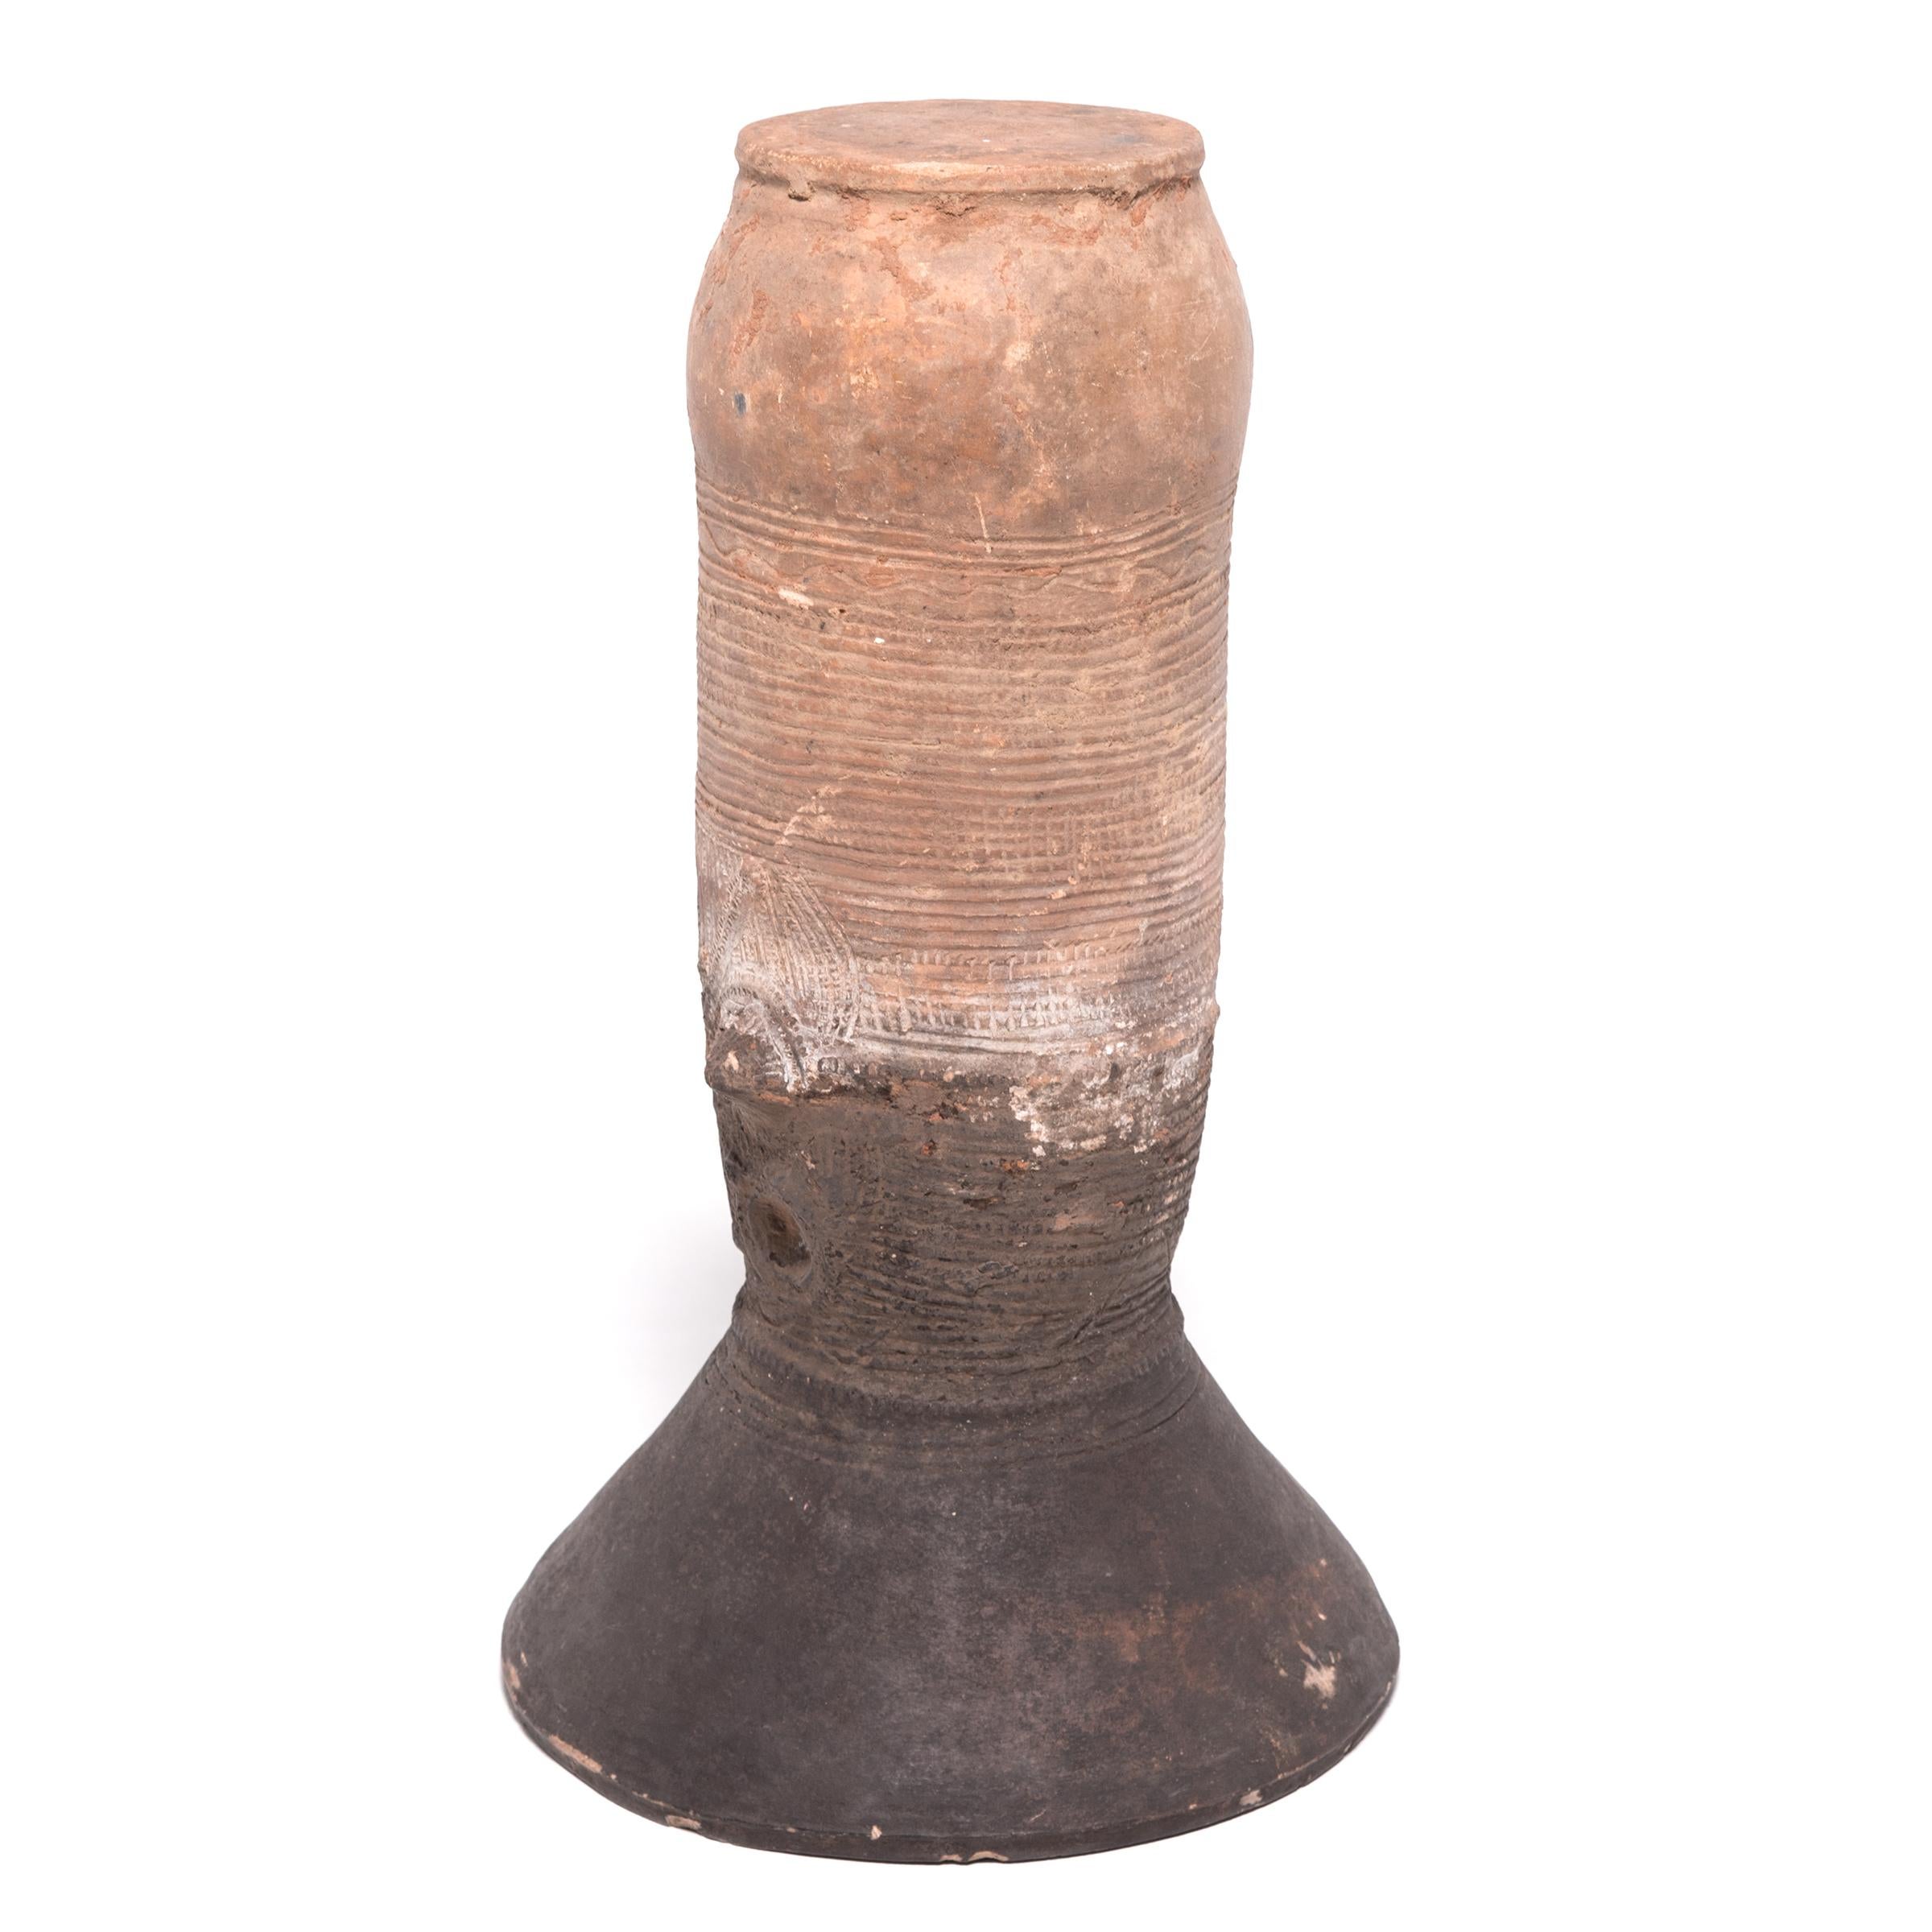 Das nigerianische Volk der Nupe wurde als eines der besten Keramiker Afrikas bezeichnet. Alltägliche Gegenstände wie dieser elegante, zylindrische Gefäßständer wurden genauestens untersucht. Diese aufgewölbte Terrakottaform wurde in einem Haus der